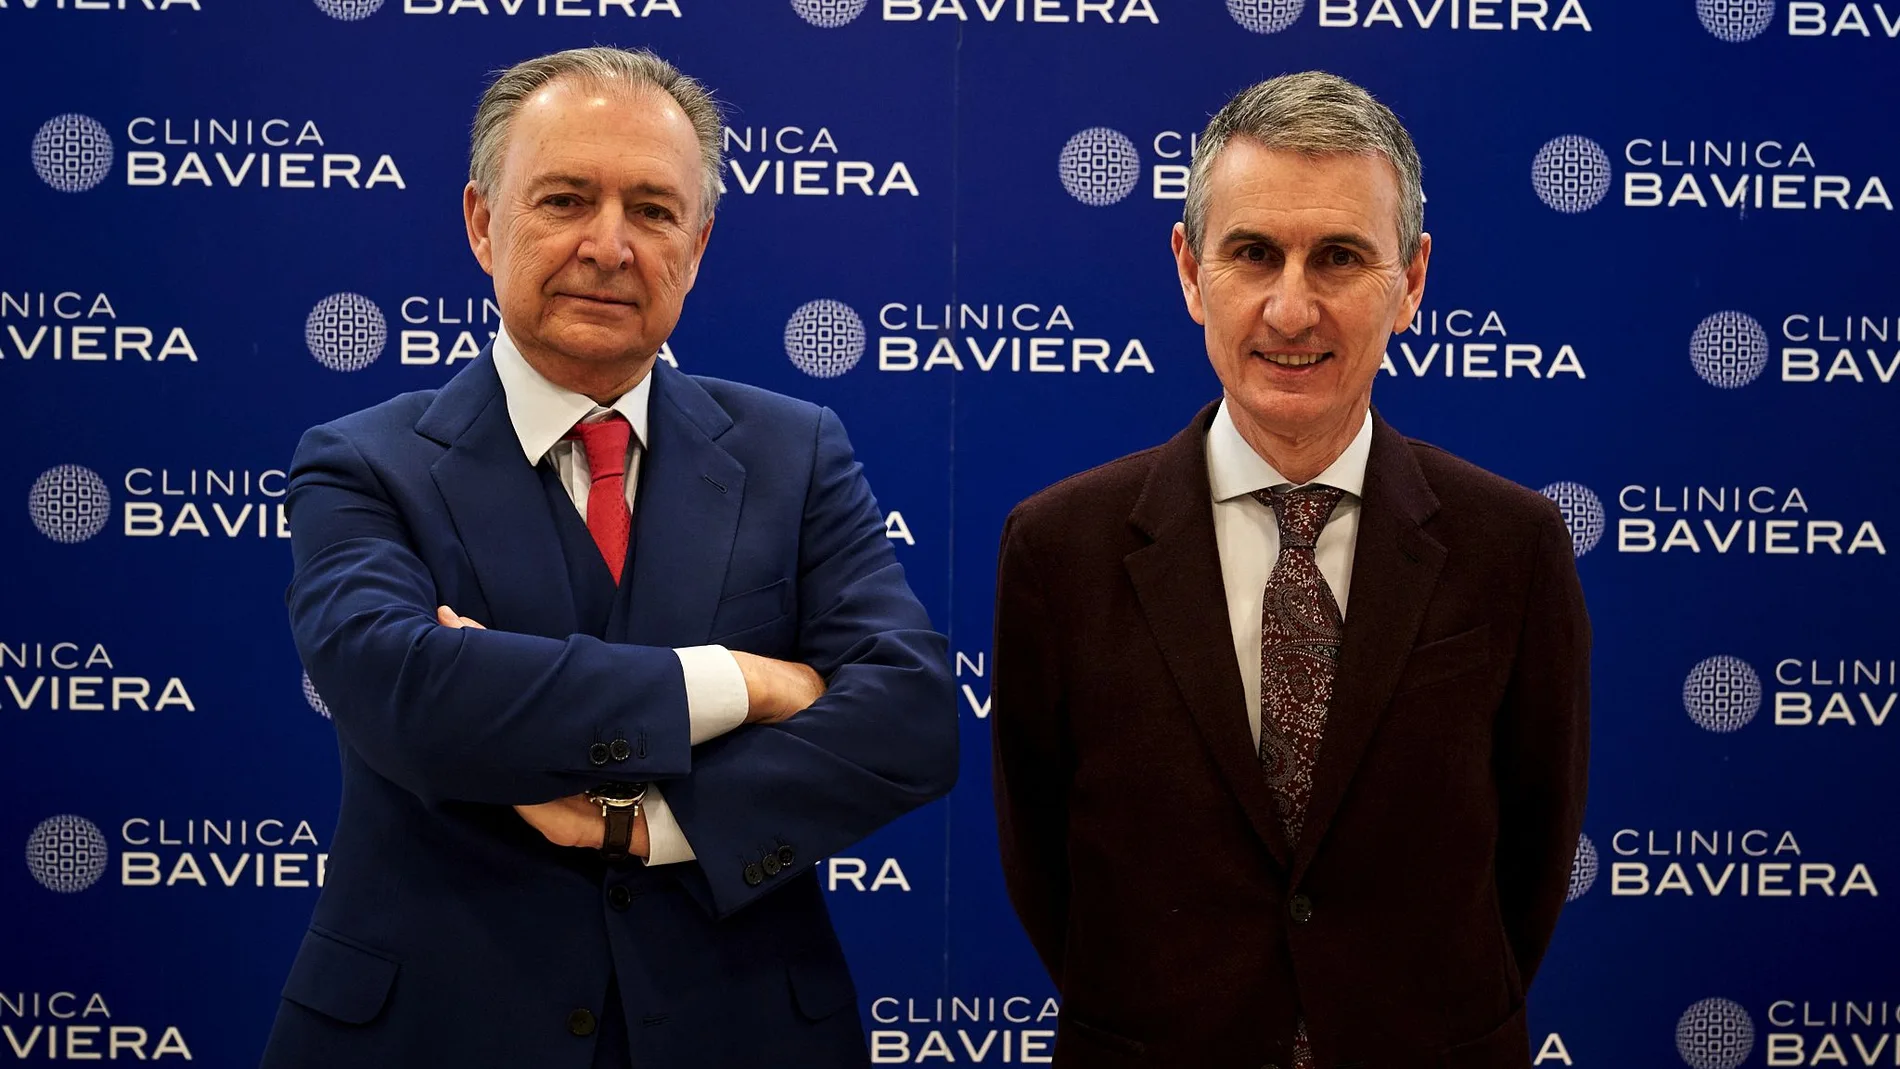 De izquierda a derecha, el Dr. Julio Baviera y Eduardo Baviera